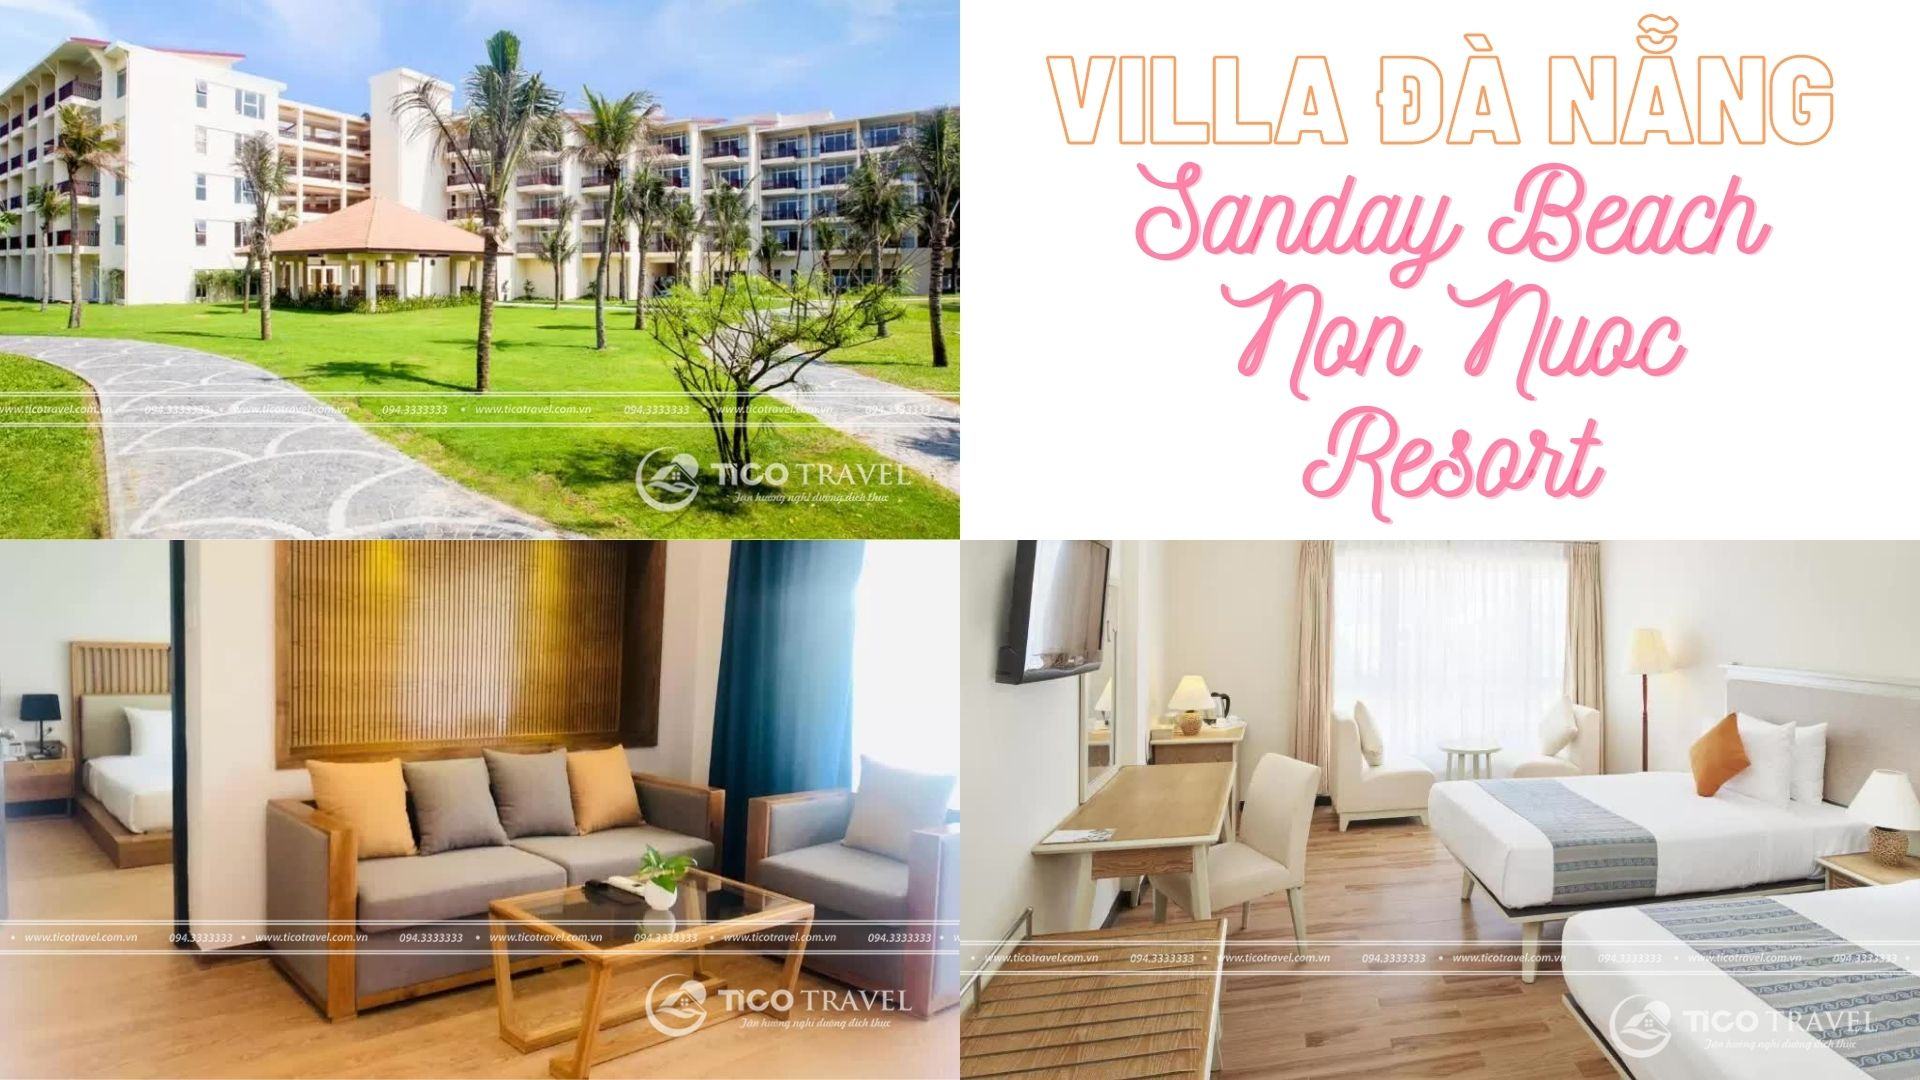 Villa Đà Nẵng - Sandy Beach Non Nuoc Resort